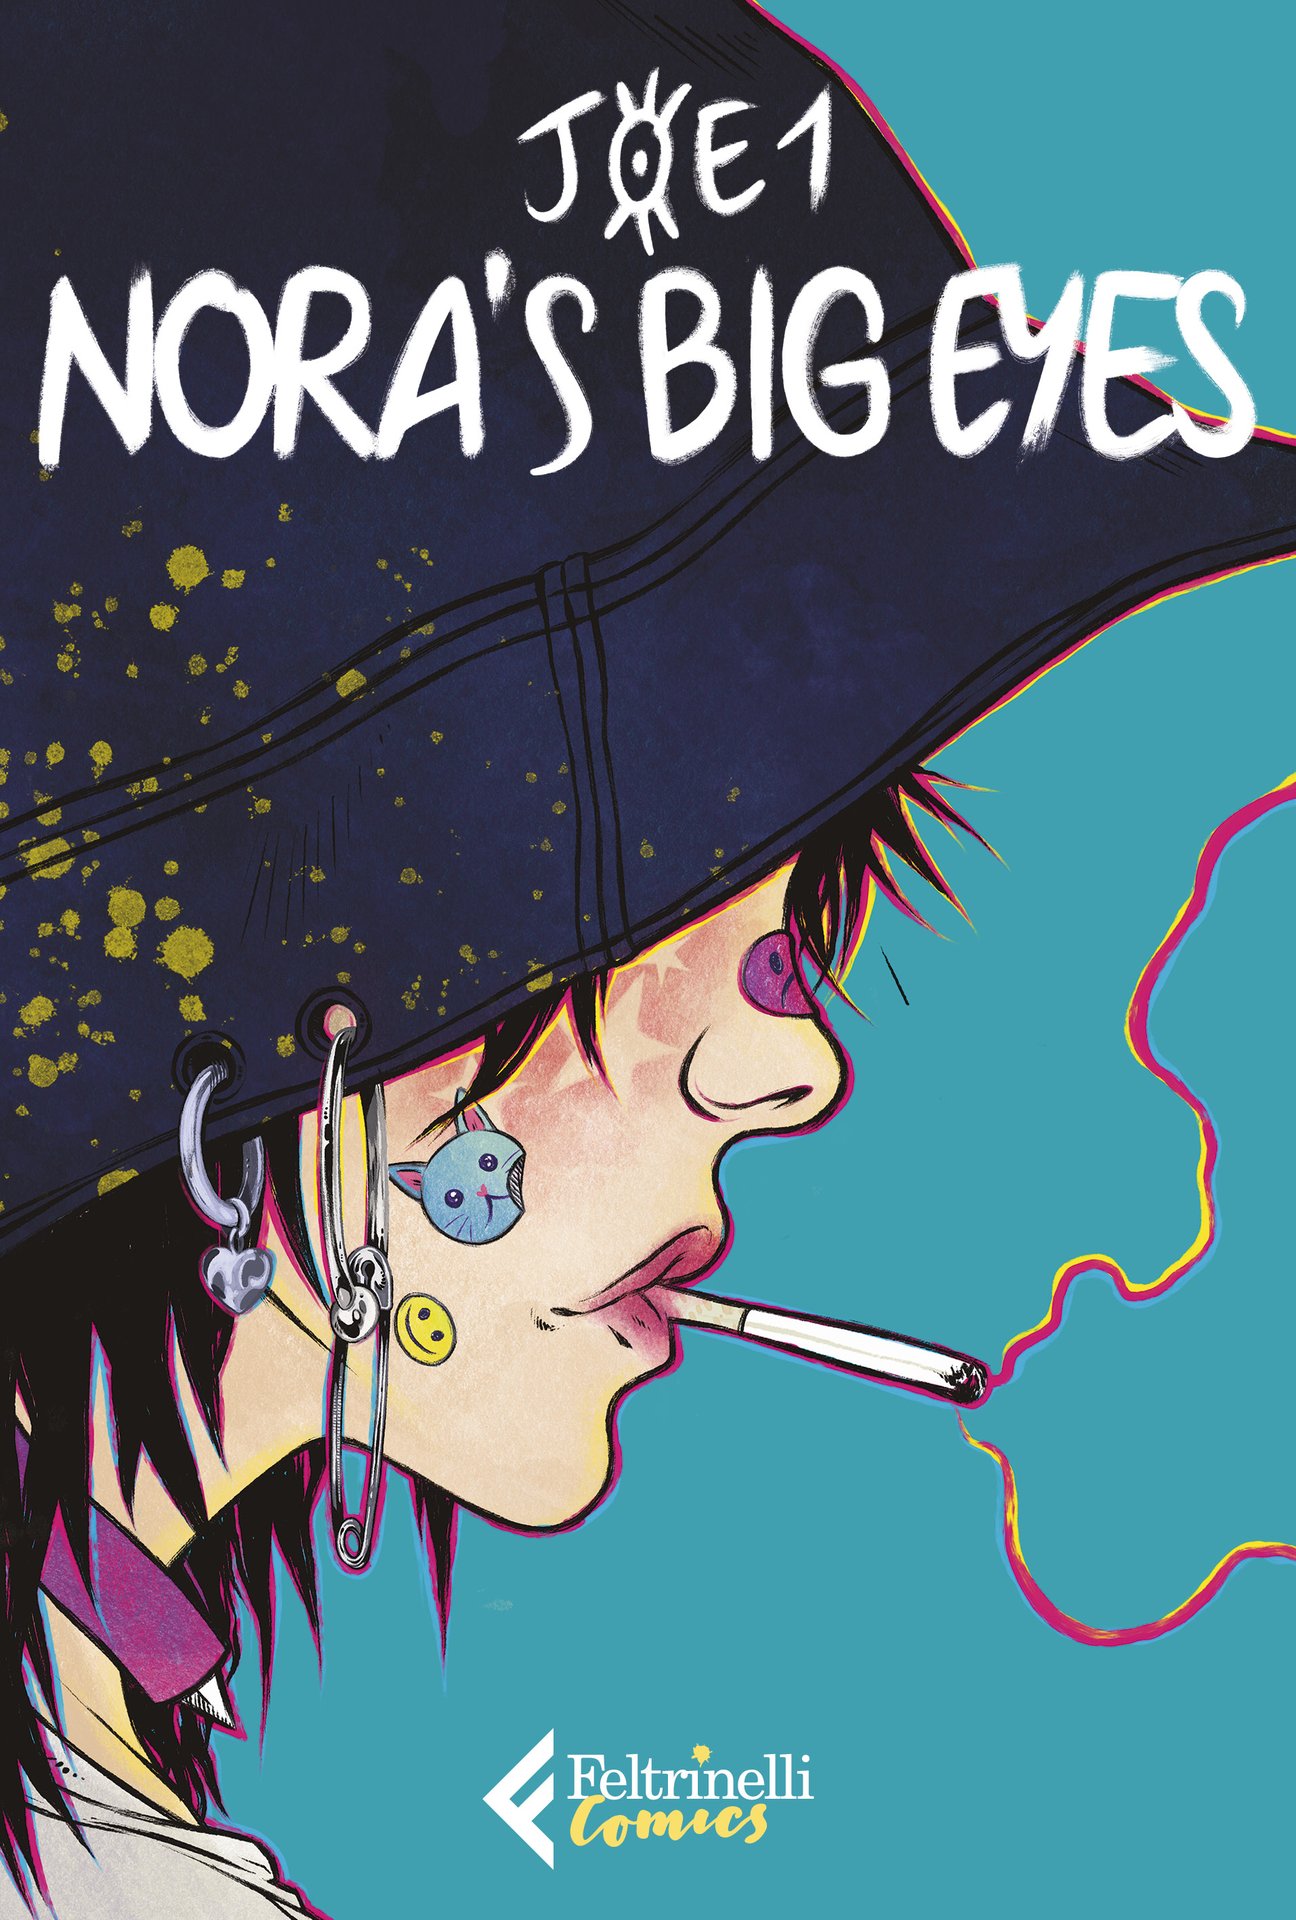 Nora's big eyes